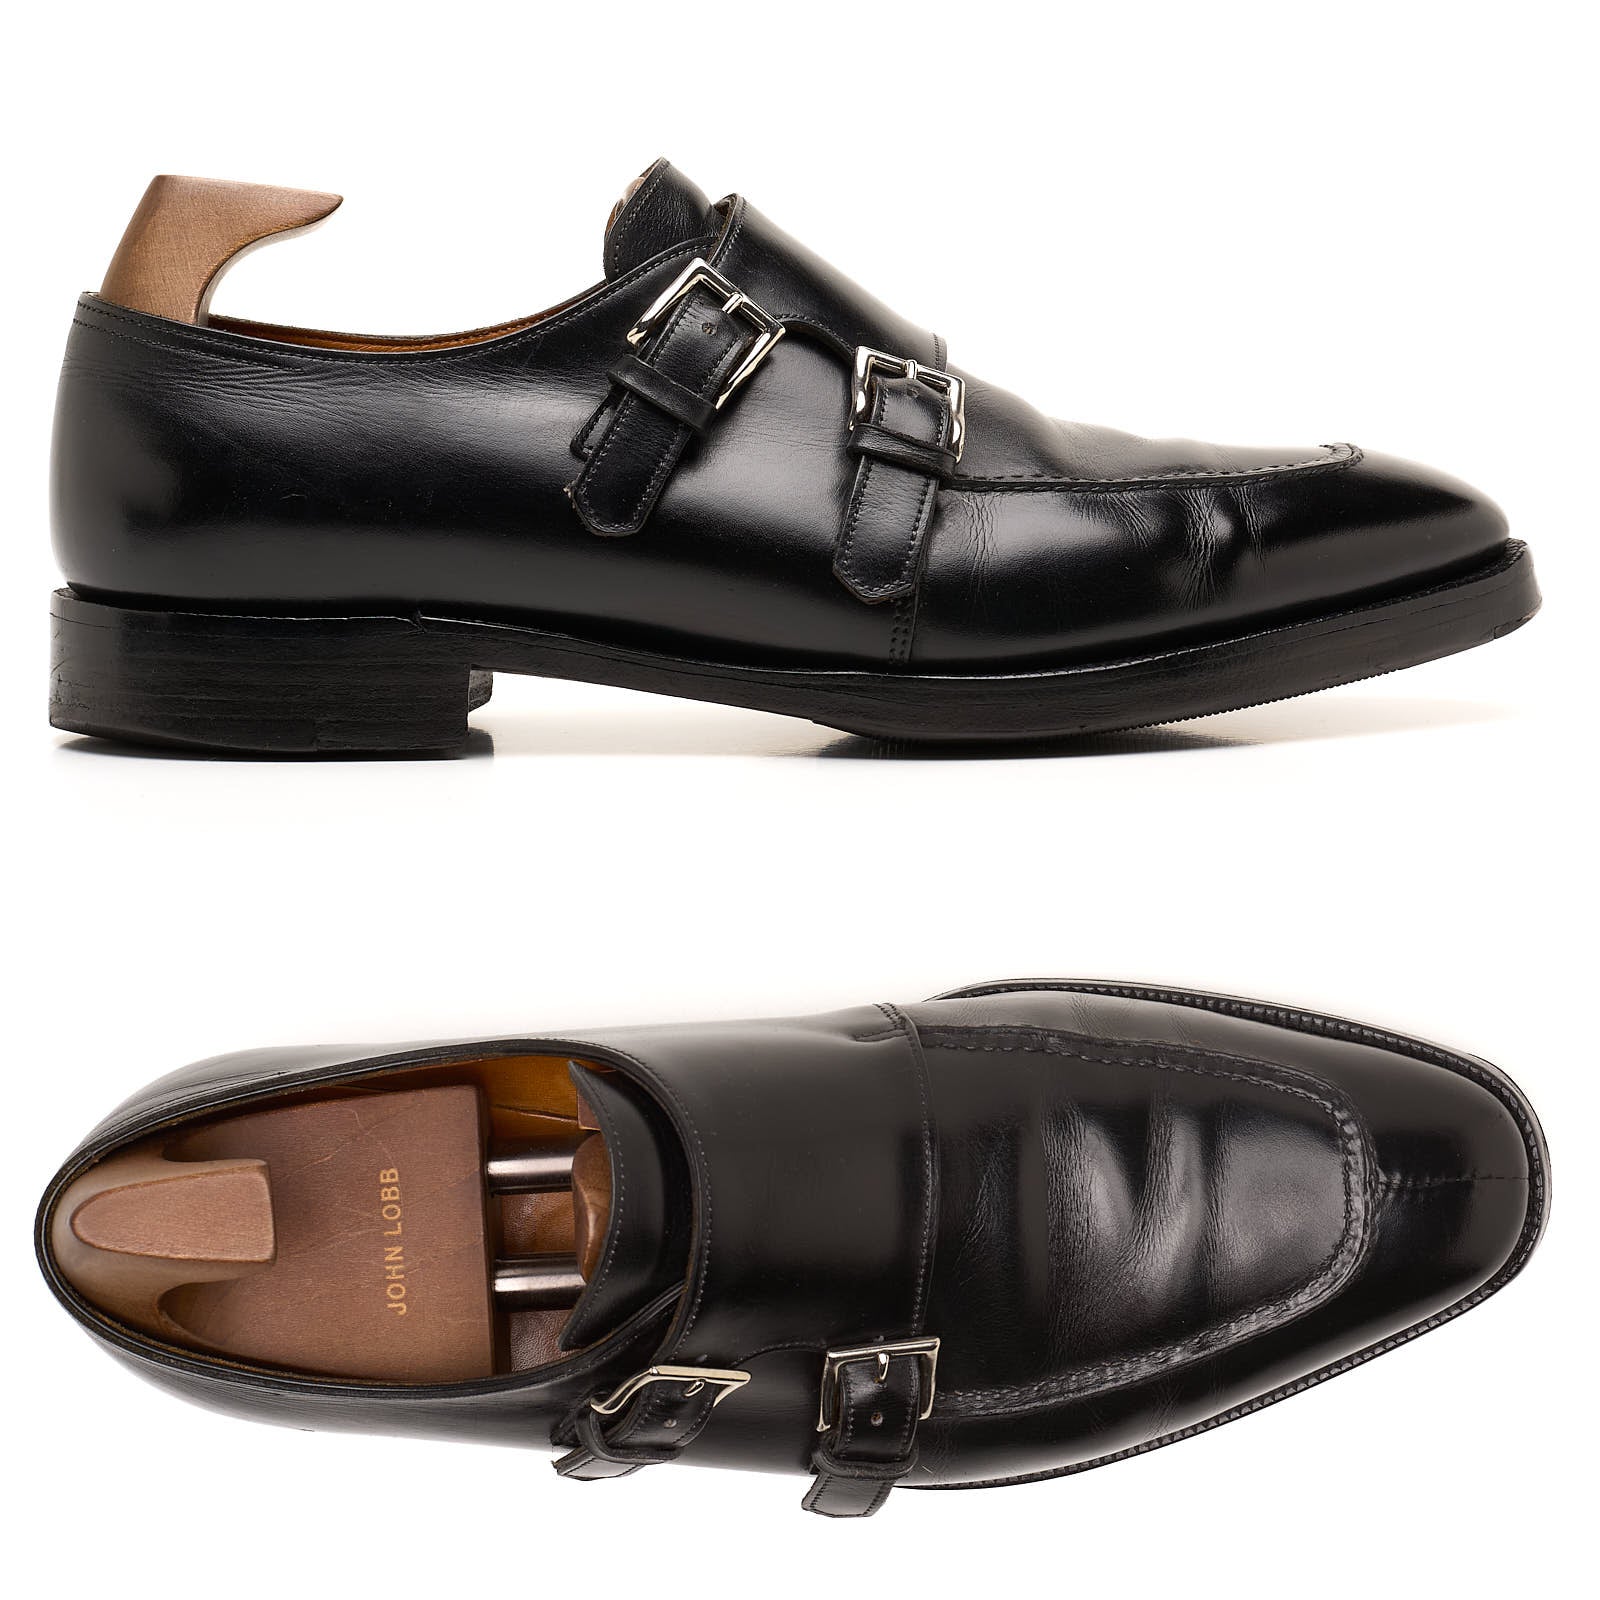 JOHN LOBB "Vintage 2000" Fulham Black Double Monk Shoes UK 9 E US 10